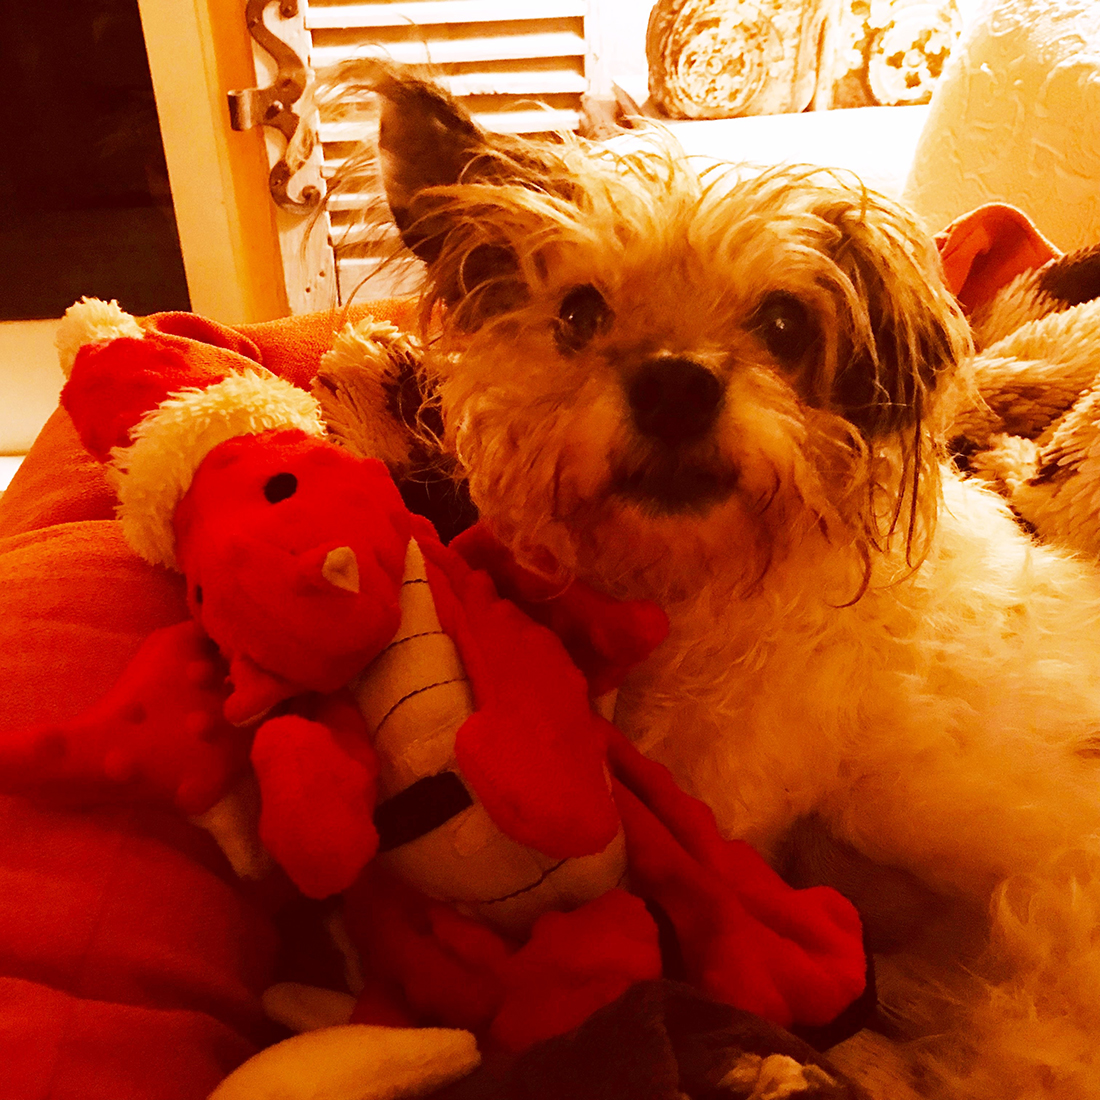 Toby and Christmas Dragon